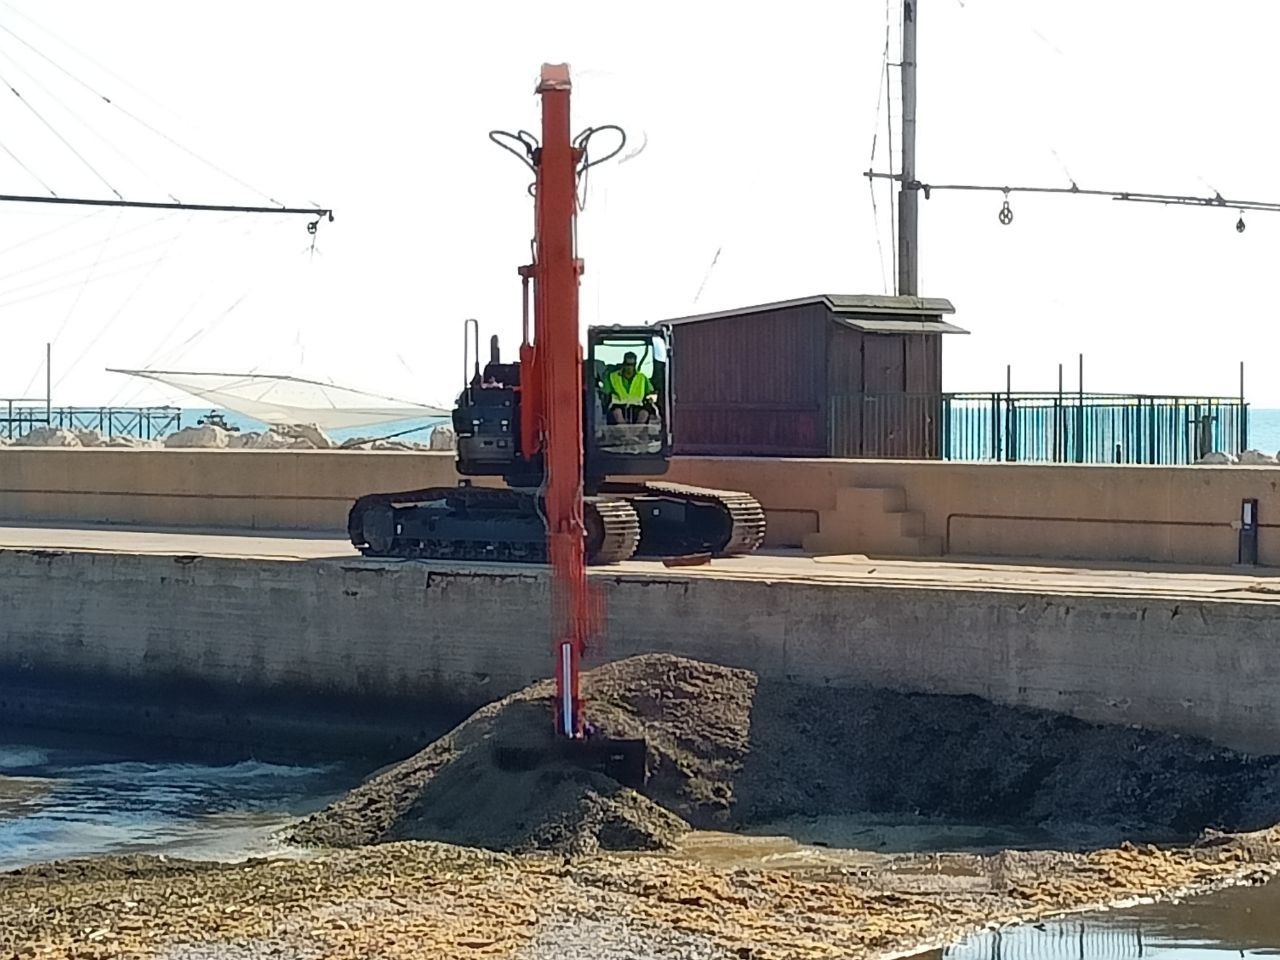 I lavori per aprire un varco nella diga naturale di ghiaia e detriti formatasi alla foce del fiume Misa a Senigallia